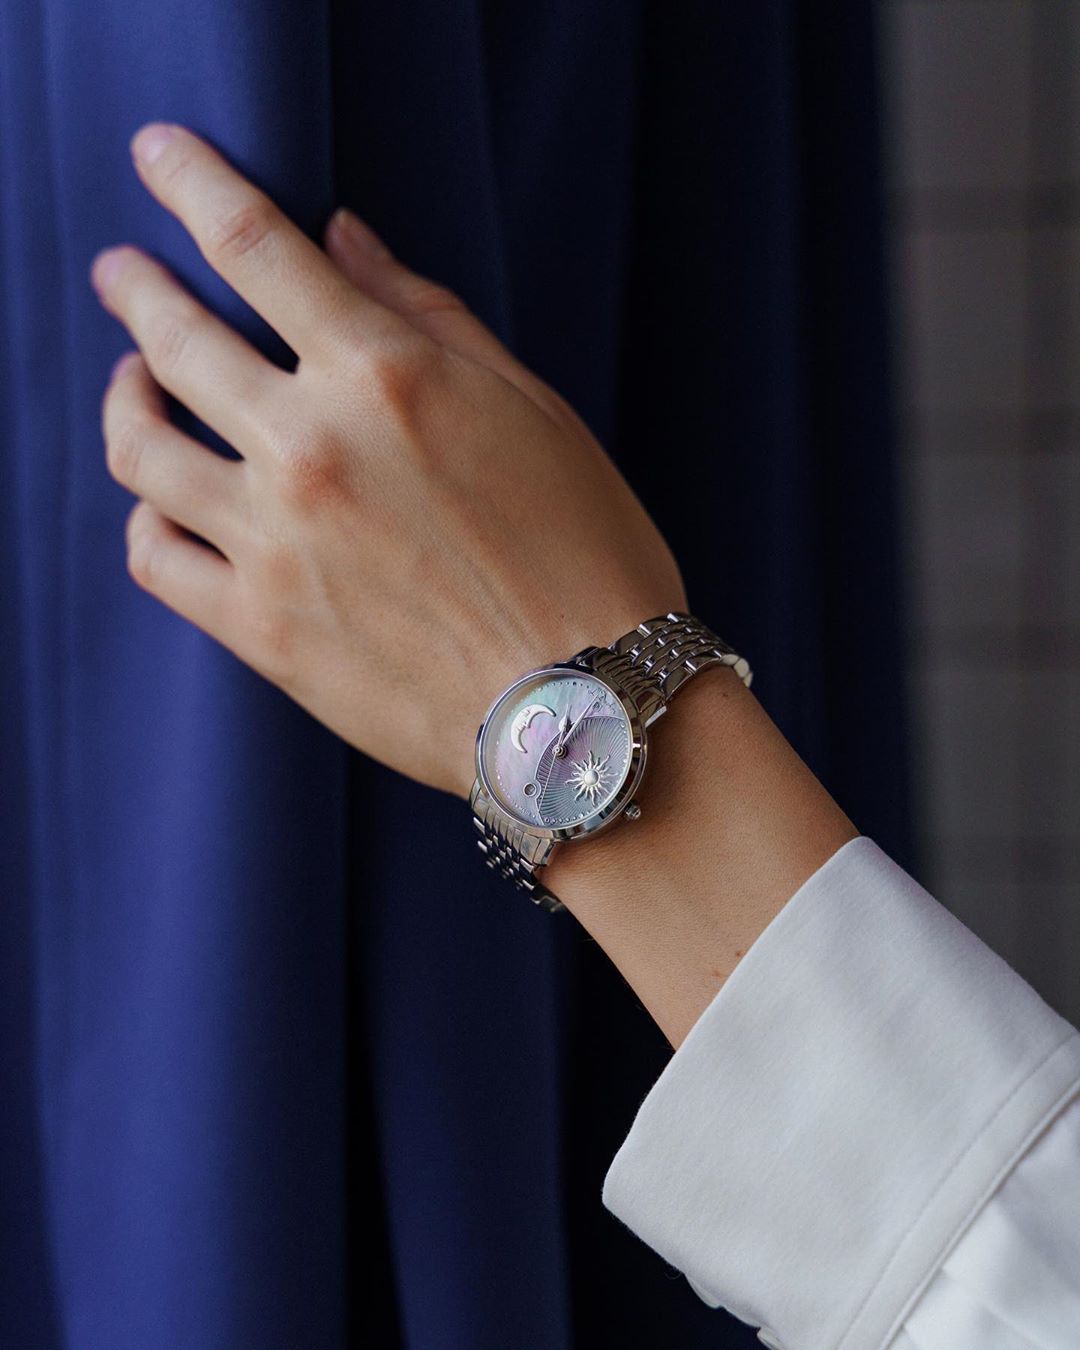 Независимо от того, днем или ночью, новые часы @lduchen с браслетом из нержавеющей стали всегда идеально подходят вам